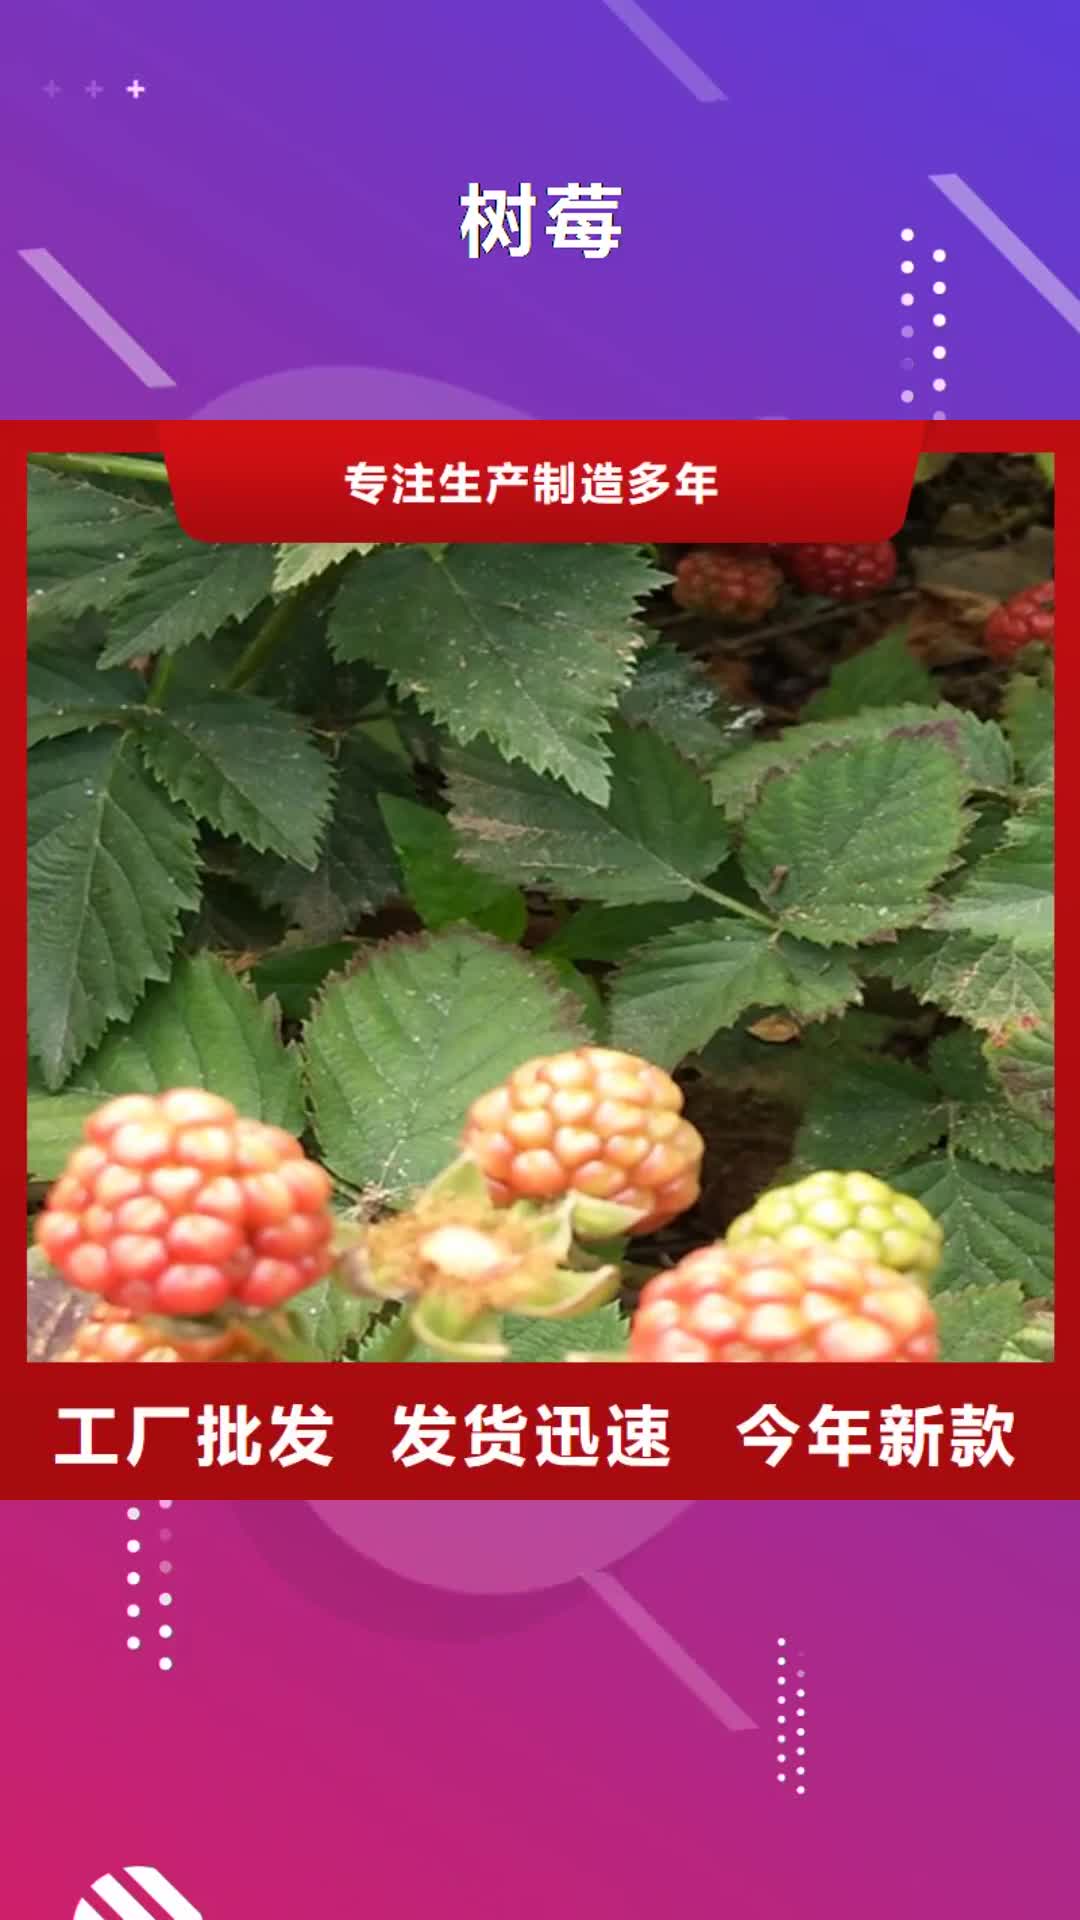 【青岛 树莓,梨树苗品质保证实力见证】